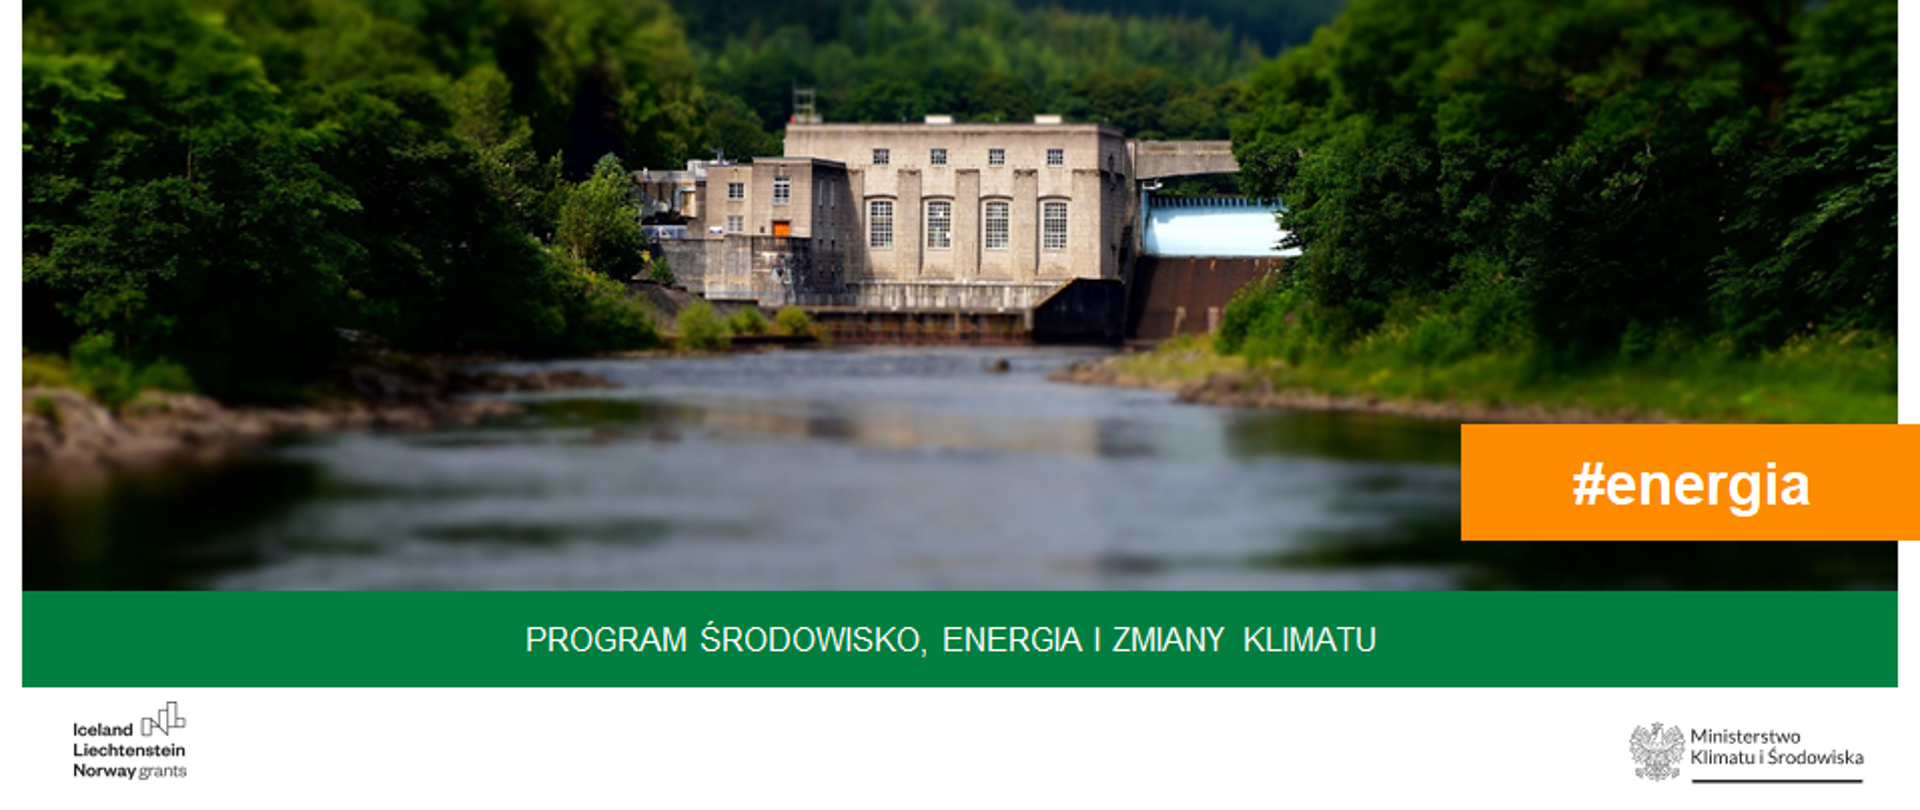 Hydroenergia w Programie Środowisko Energia i Zmiany Klimatu MF EOG